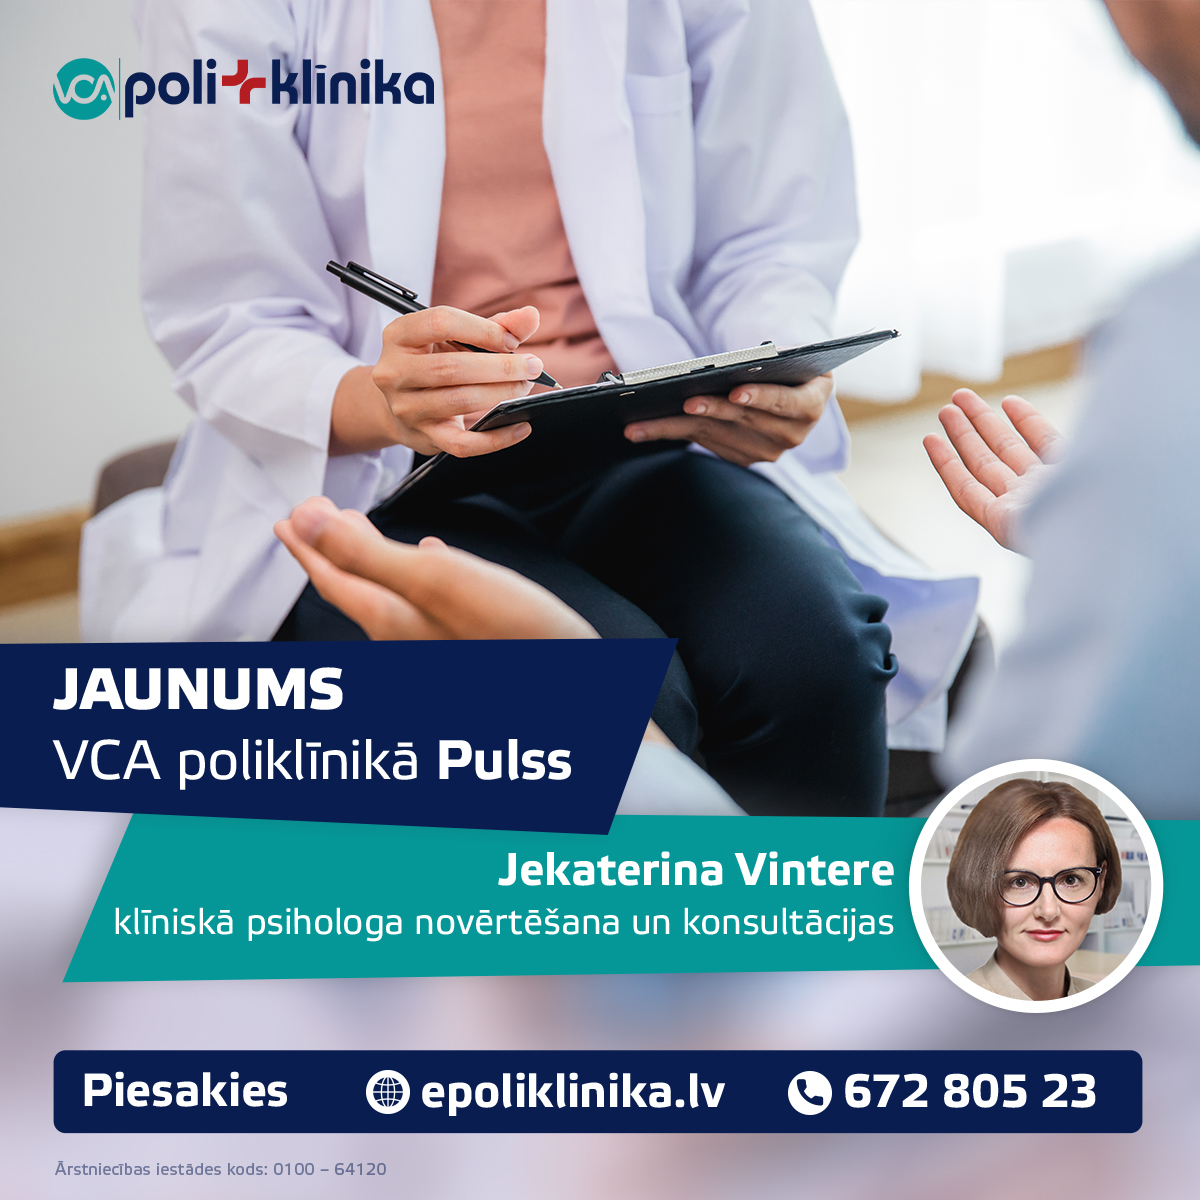 VCA poliklīnikā Pulss jauns speciālists - Jekaterina Vintere